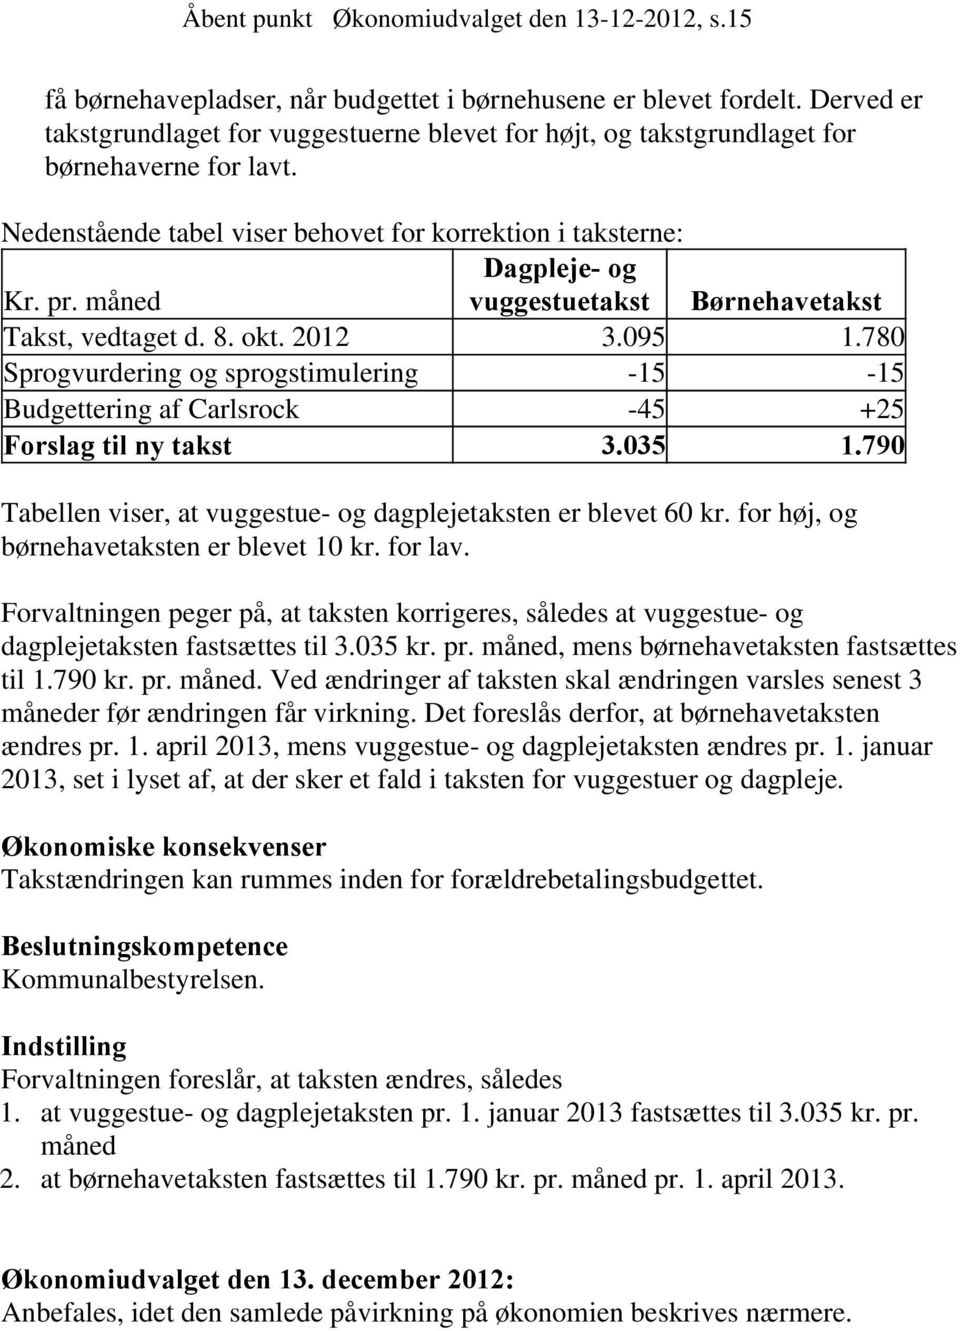 måned vuggestuetakst Børnehavetakst Takst, vedtaget d. 8. okt. 2012 3.095 1.780 Sprogvurdering og sprogstimulering -15-15 Budgettering af Carlsrock -45 +25 Forslag til ny takst 3.035 1.